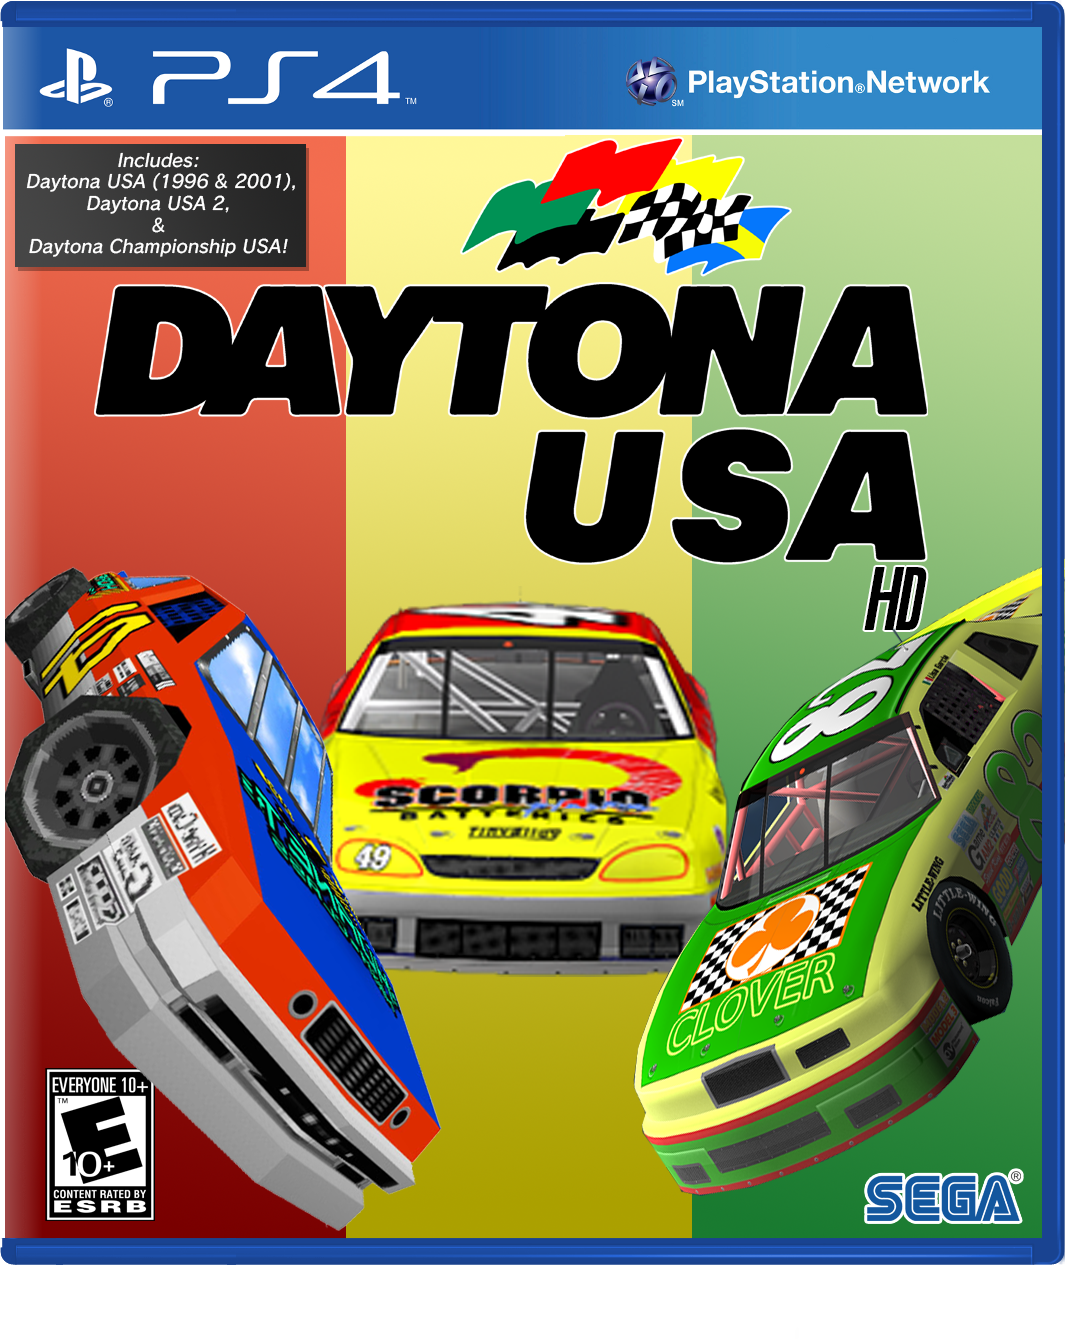 Daytona USA HD Collection box cover